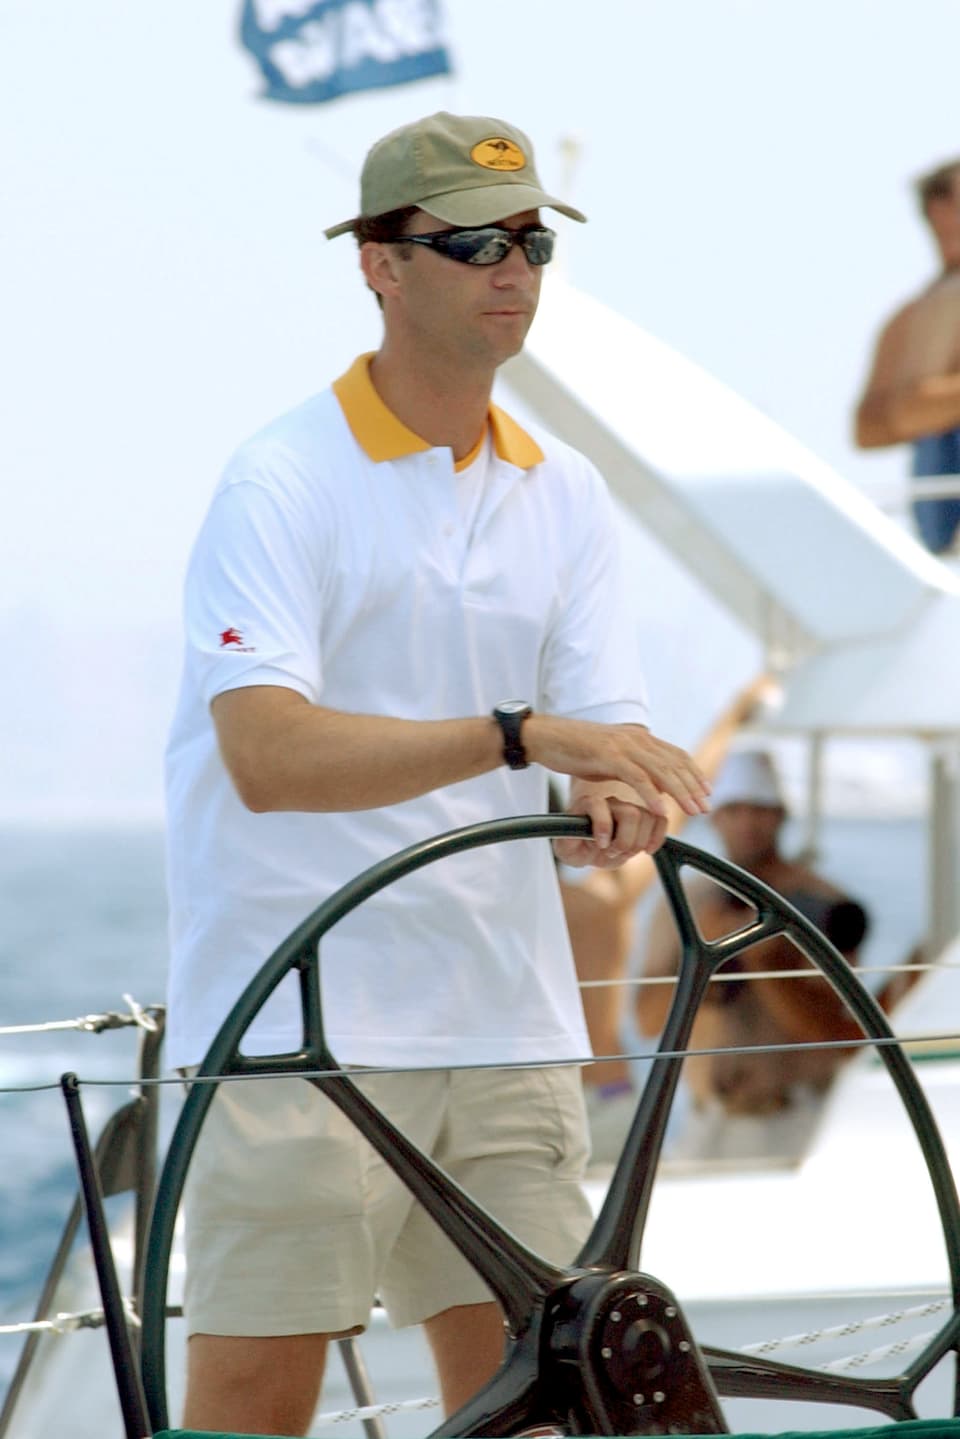 Felipe war 1992 Mitglied des spanischen Segelteams bei den Olympischen Sommerspielen in Barcelona. 